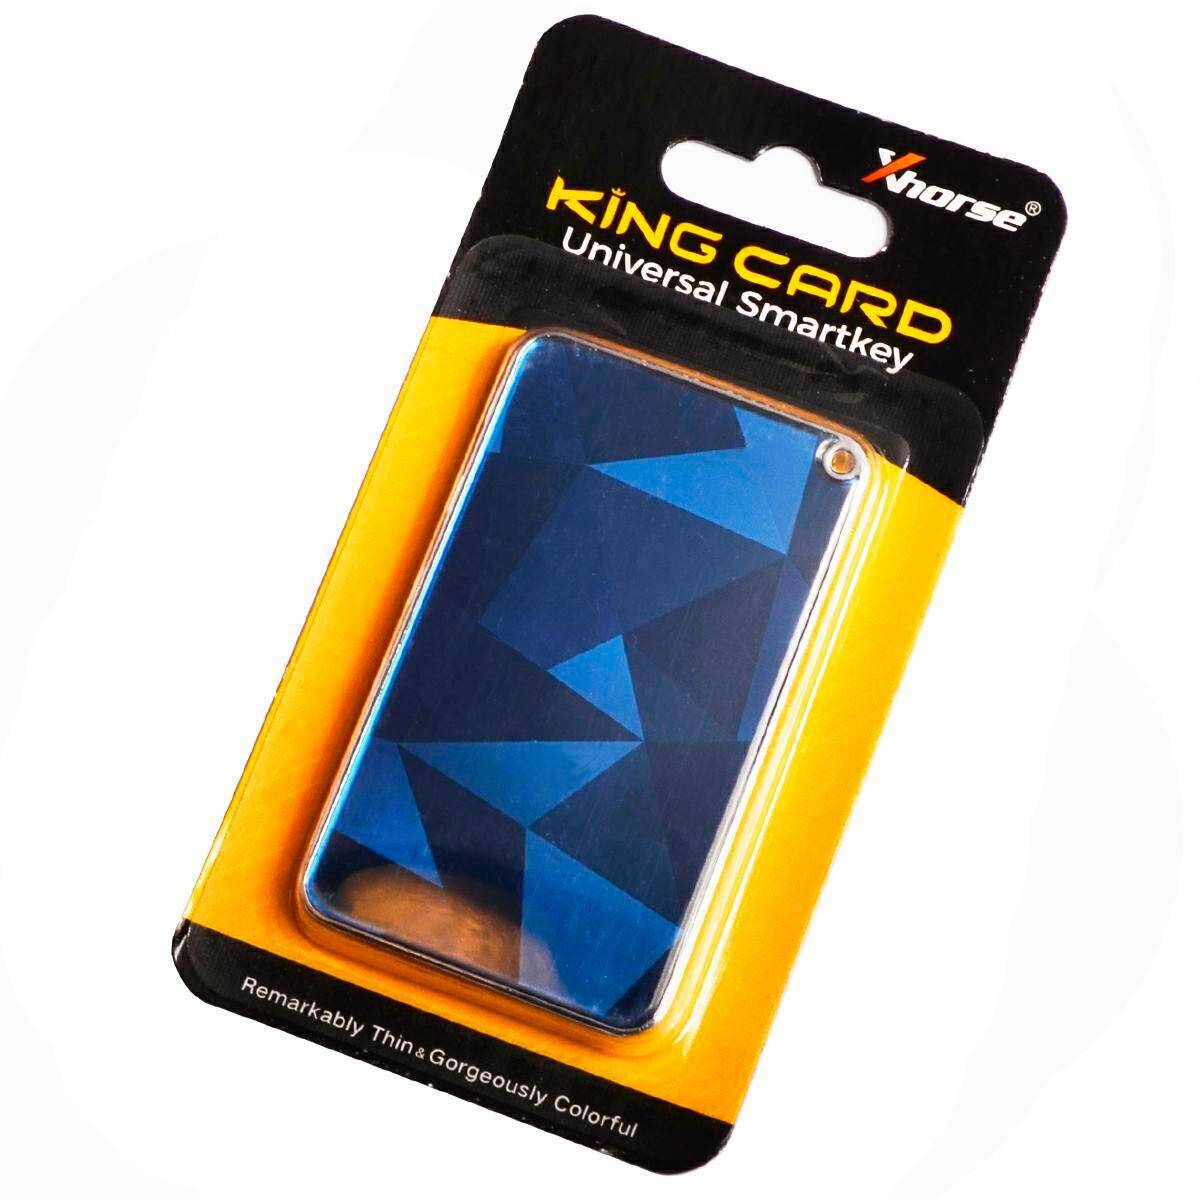 Remote Xhorse XSKC04EN KING CARD